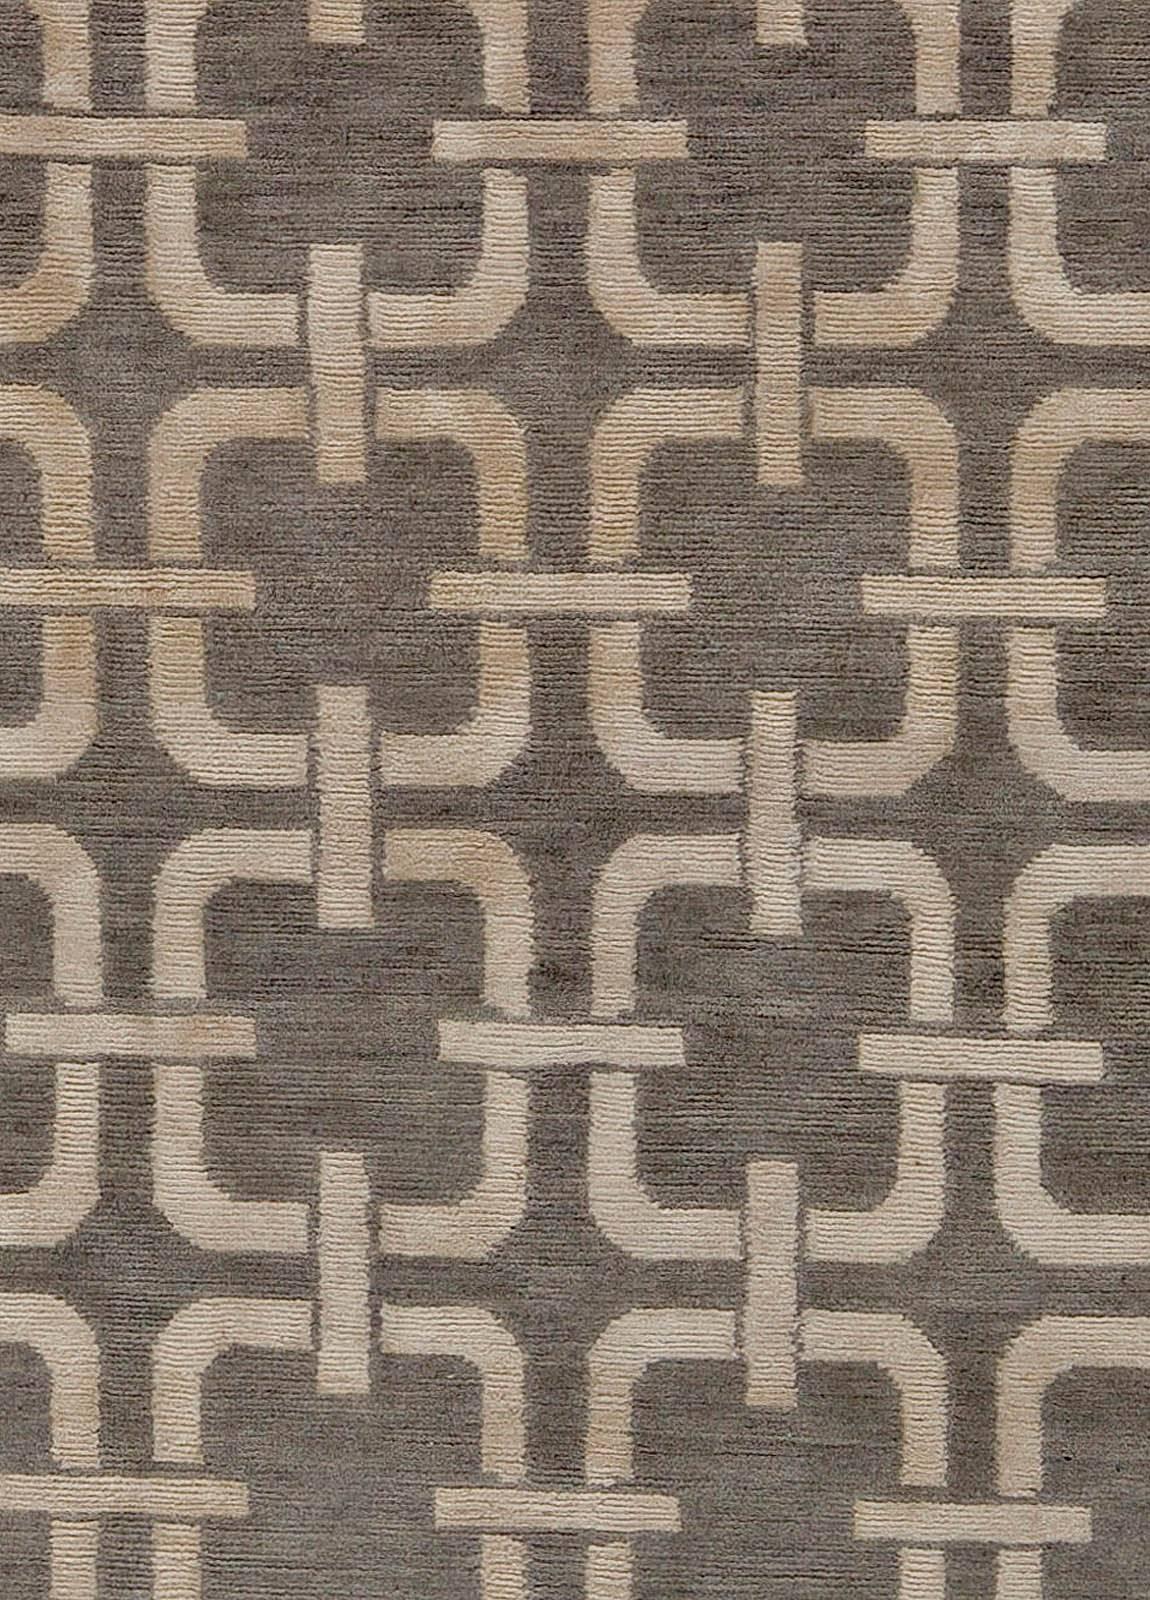 Zeitgenössischer Teppich mit geometrischem Design in Grau und Beige von Doris Leslie Blau.
Größe: 6'0